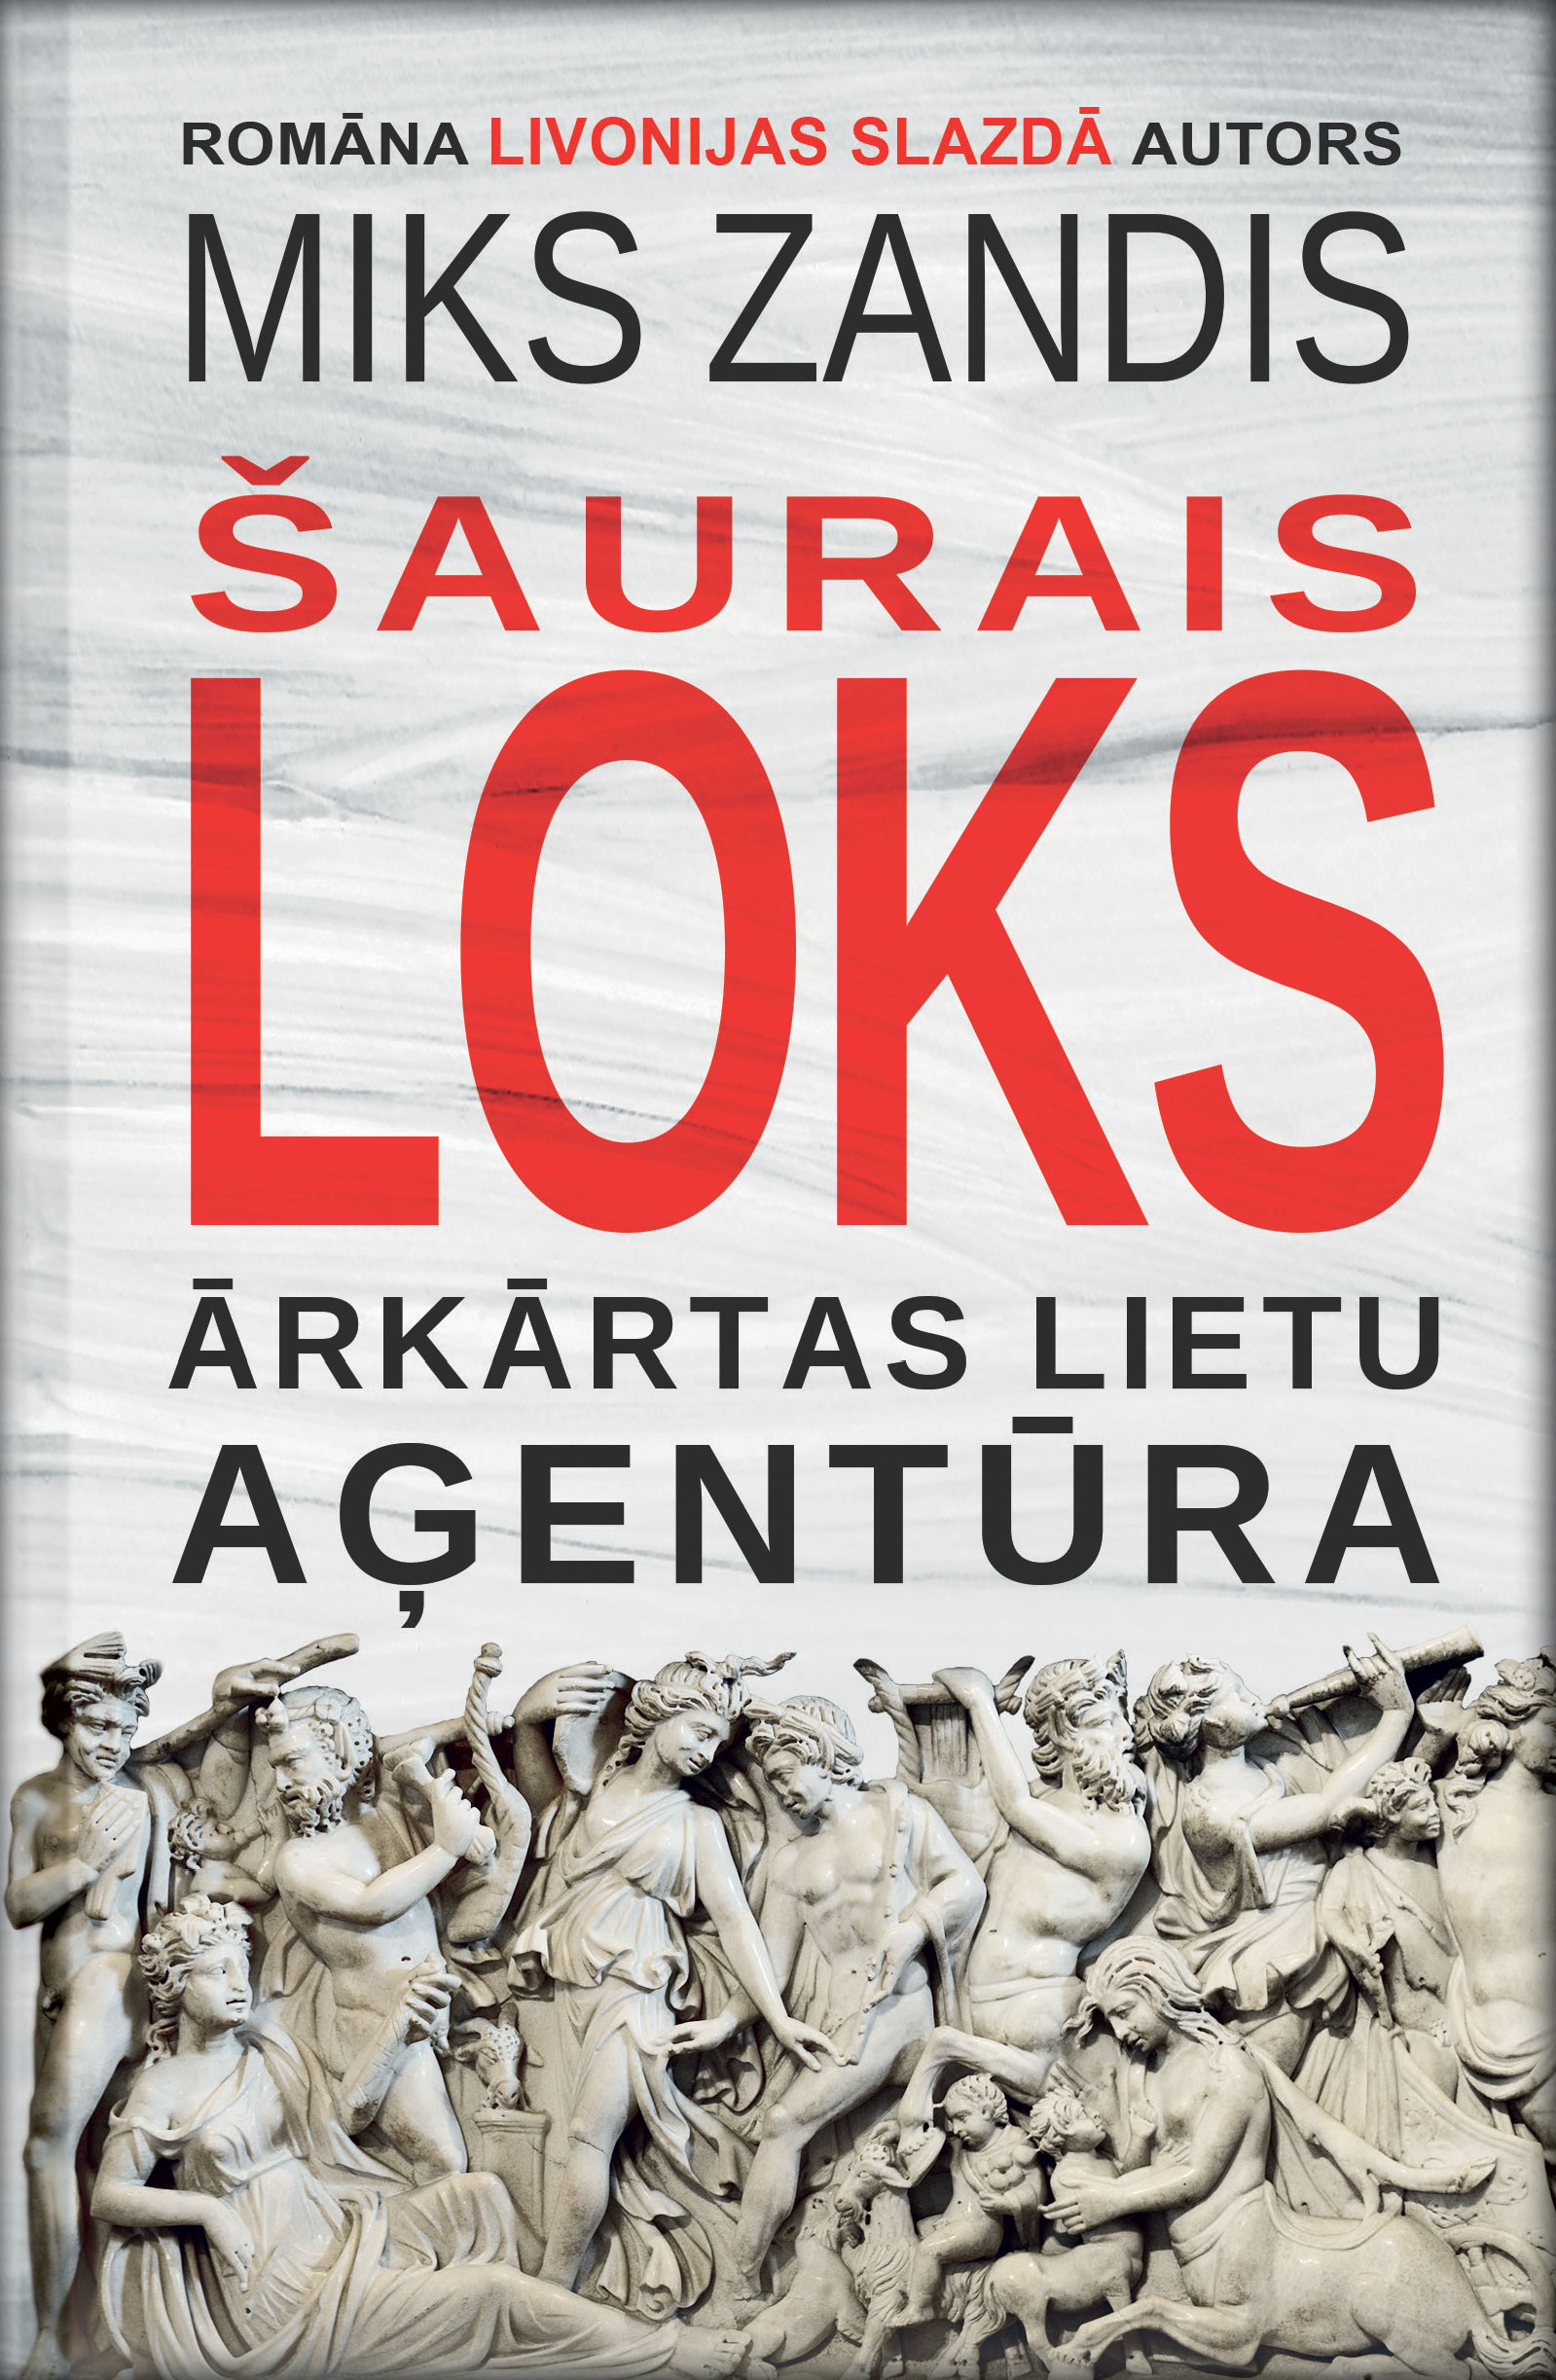 1690145-01v-Saurais-loks-Arkartas-lietu-agentu.jpg